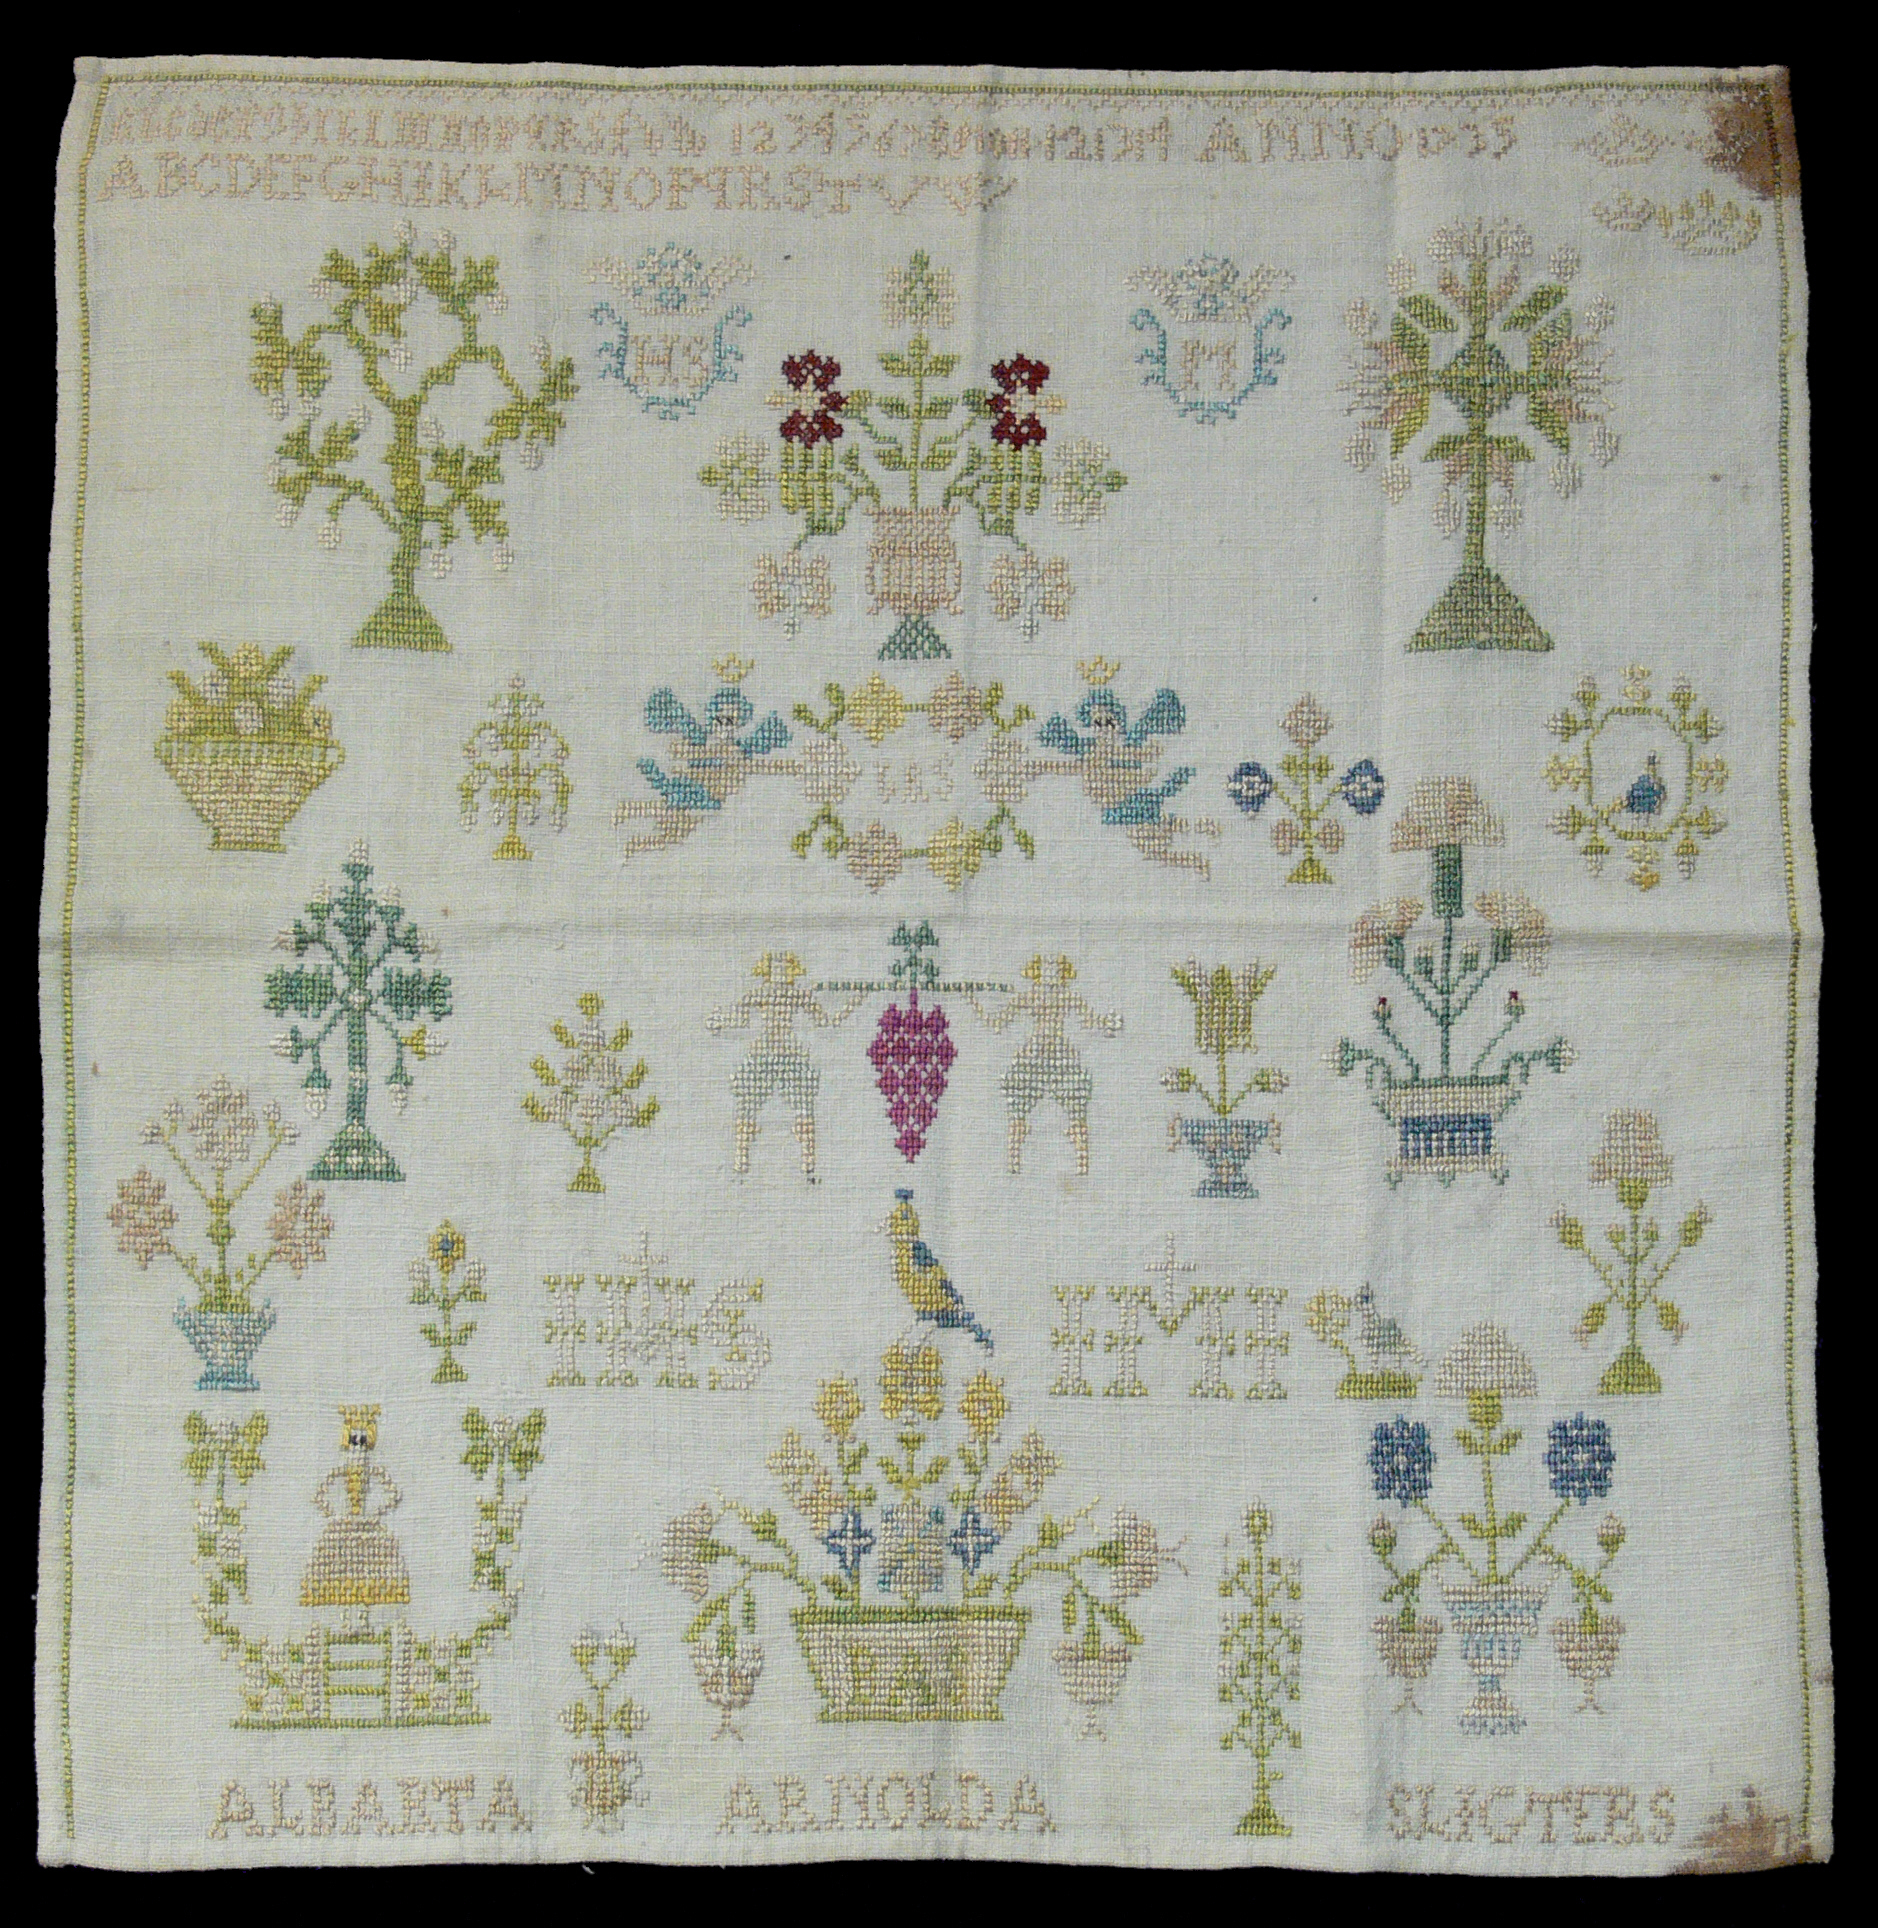 Embroidery Patterns Online Cross Stitch Wikipedia